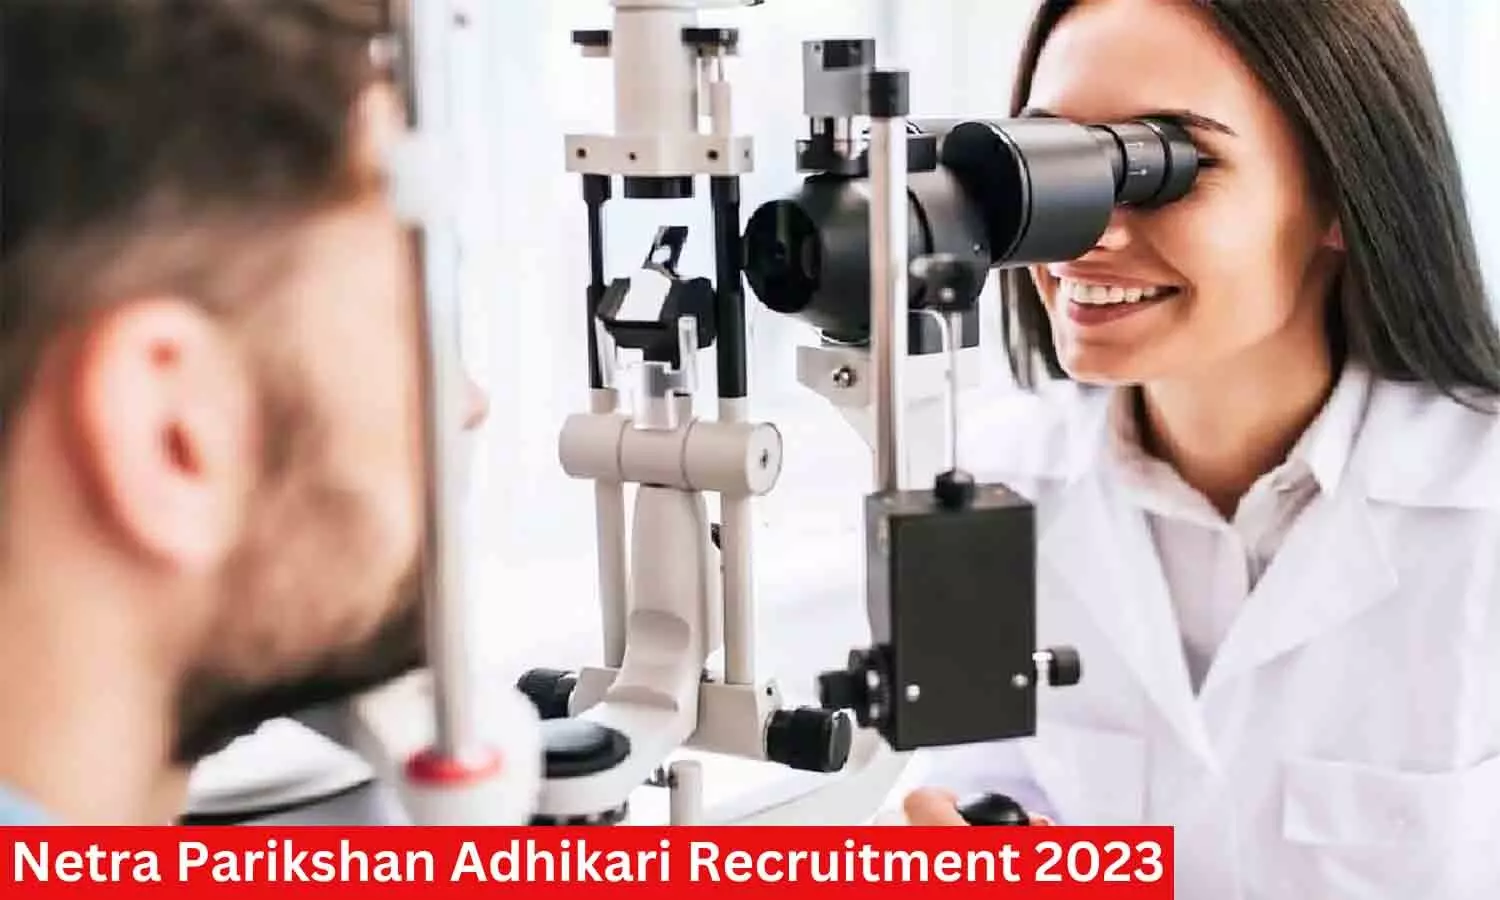 Netra Parikshan Adhikari Recruitment 2023: नेत्र परीक्षण अधिकारी पदों के लिए निकली वैकेंसी, यहां पर देखें भर्ती से संबंधित जानकारियां